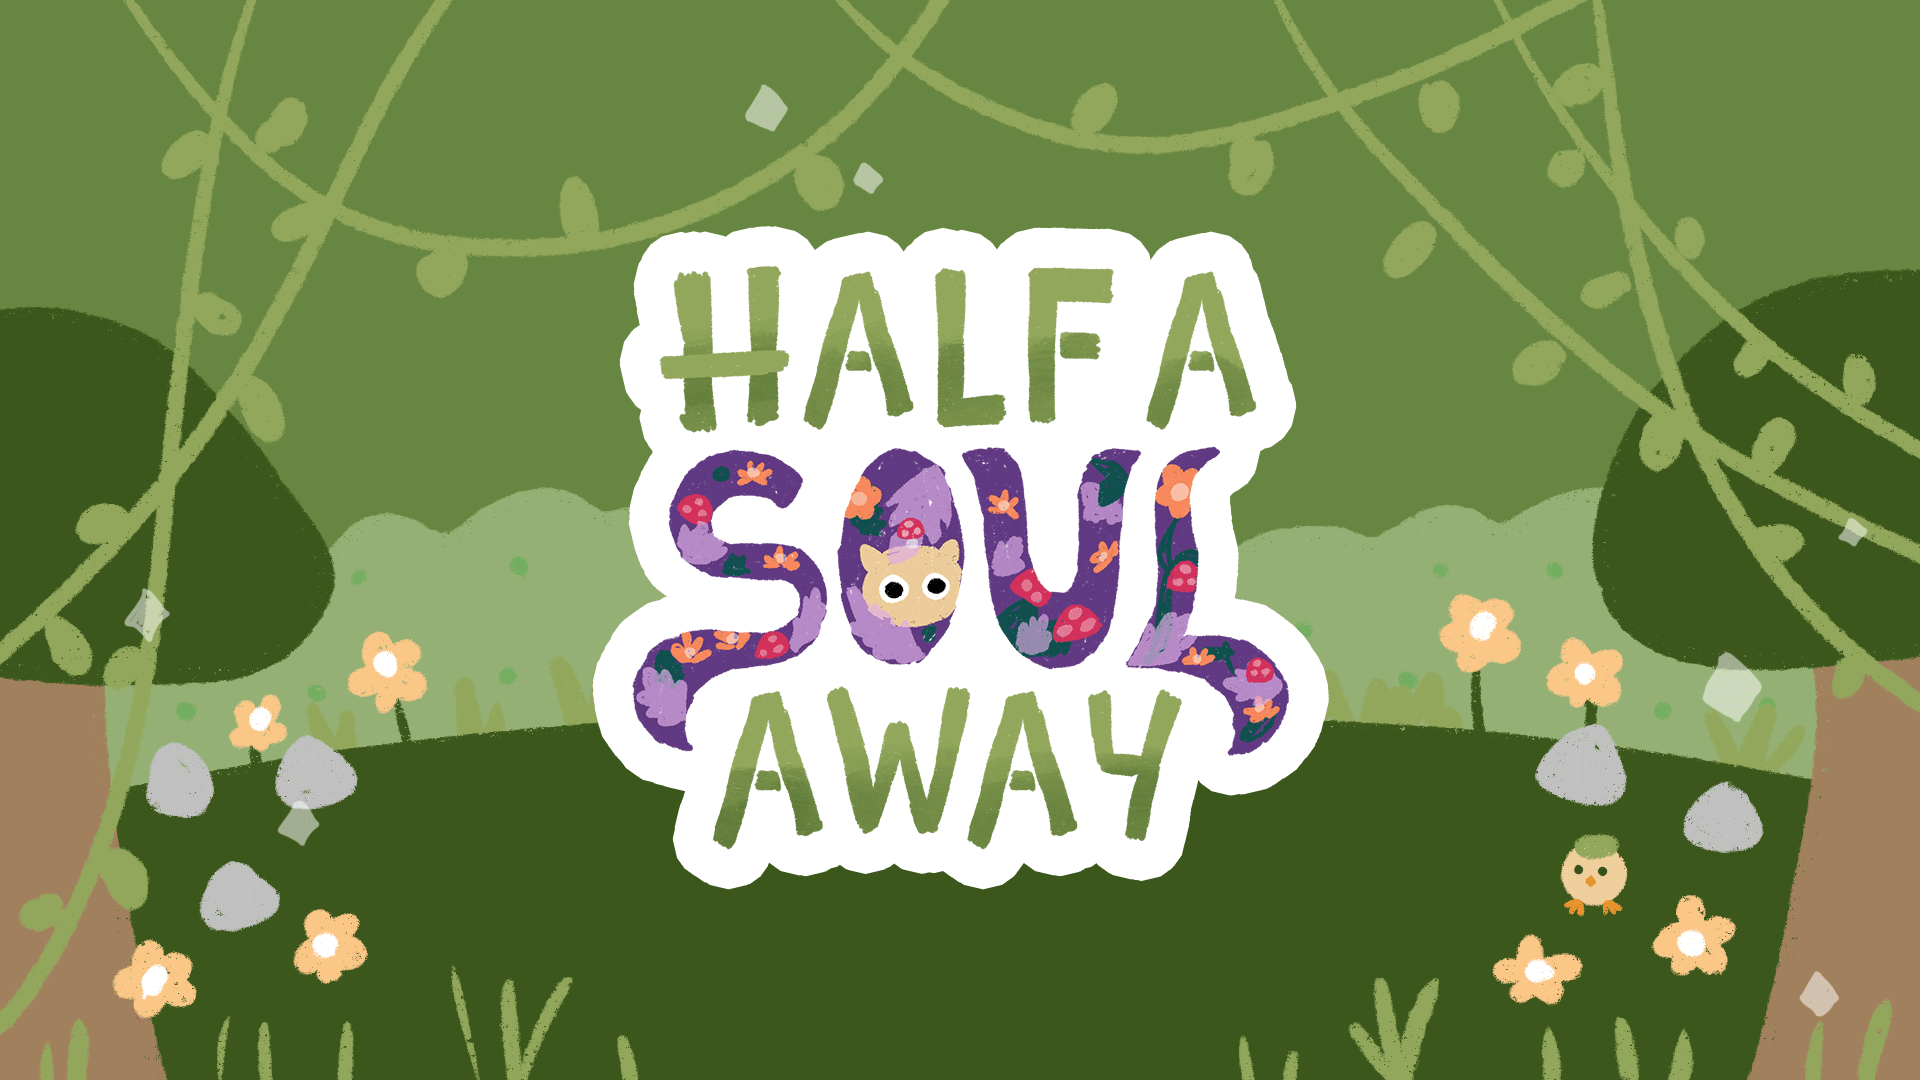 Half a Soul Away